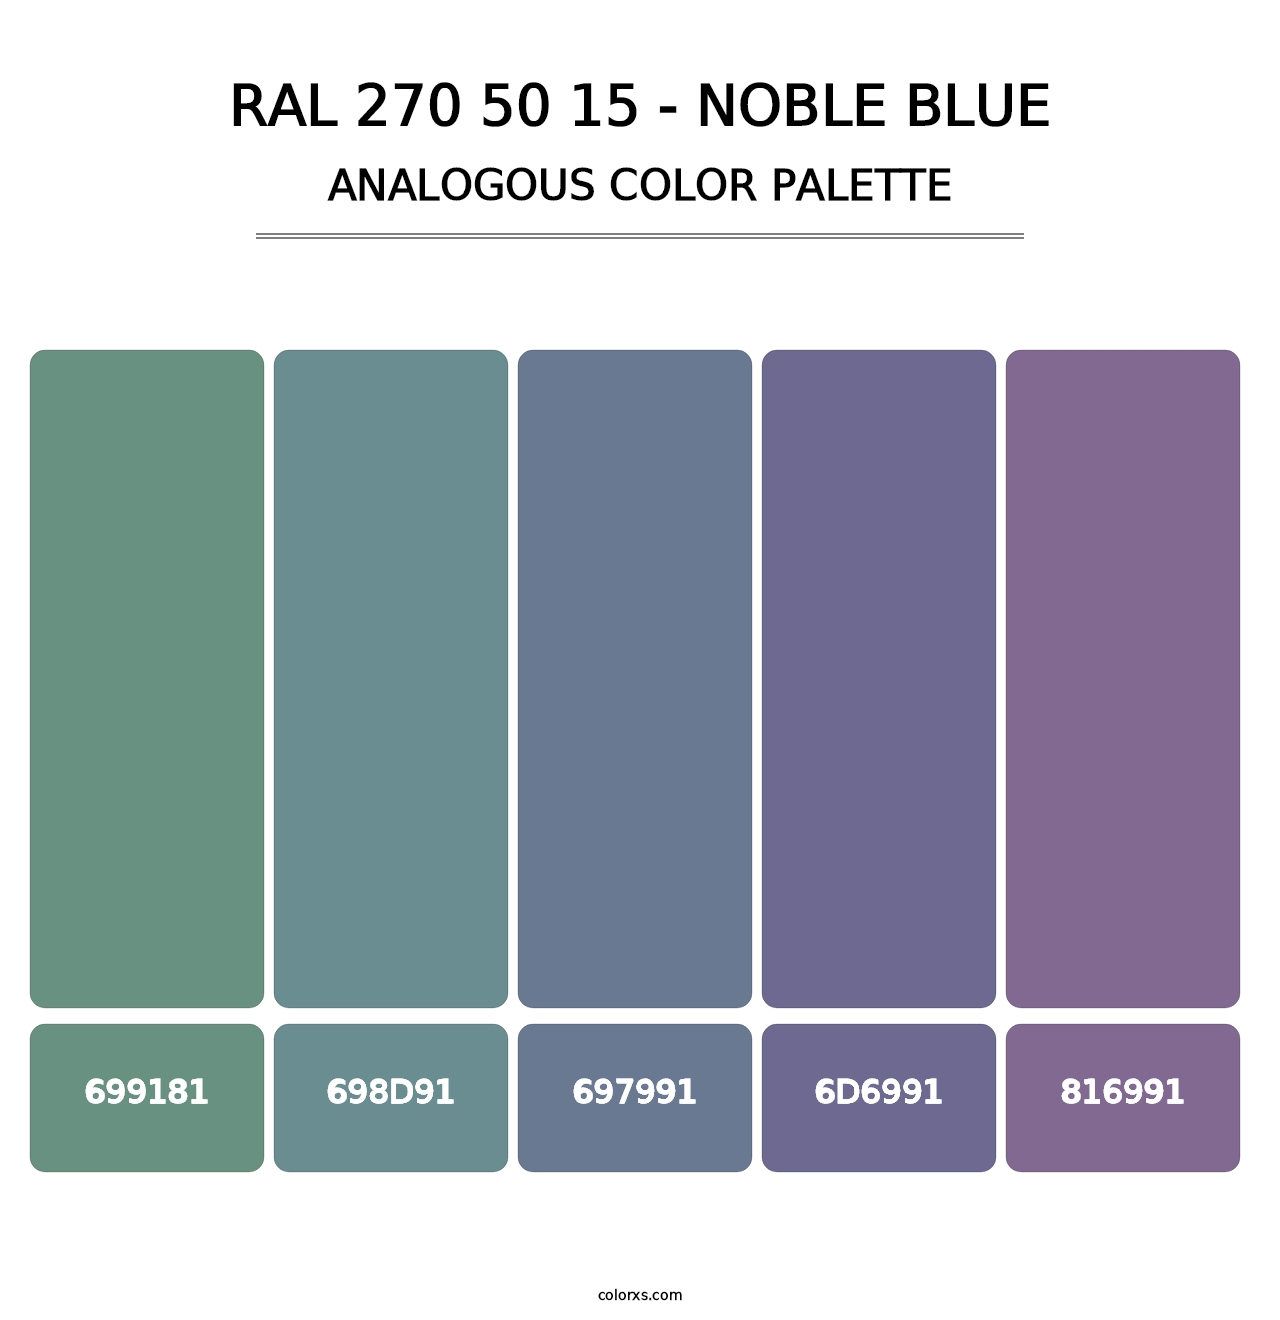 RAL 270 50 15 - Noble Blue - Analogous Color Palette